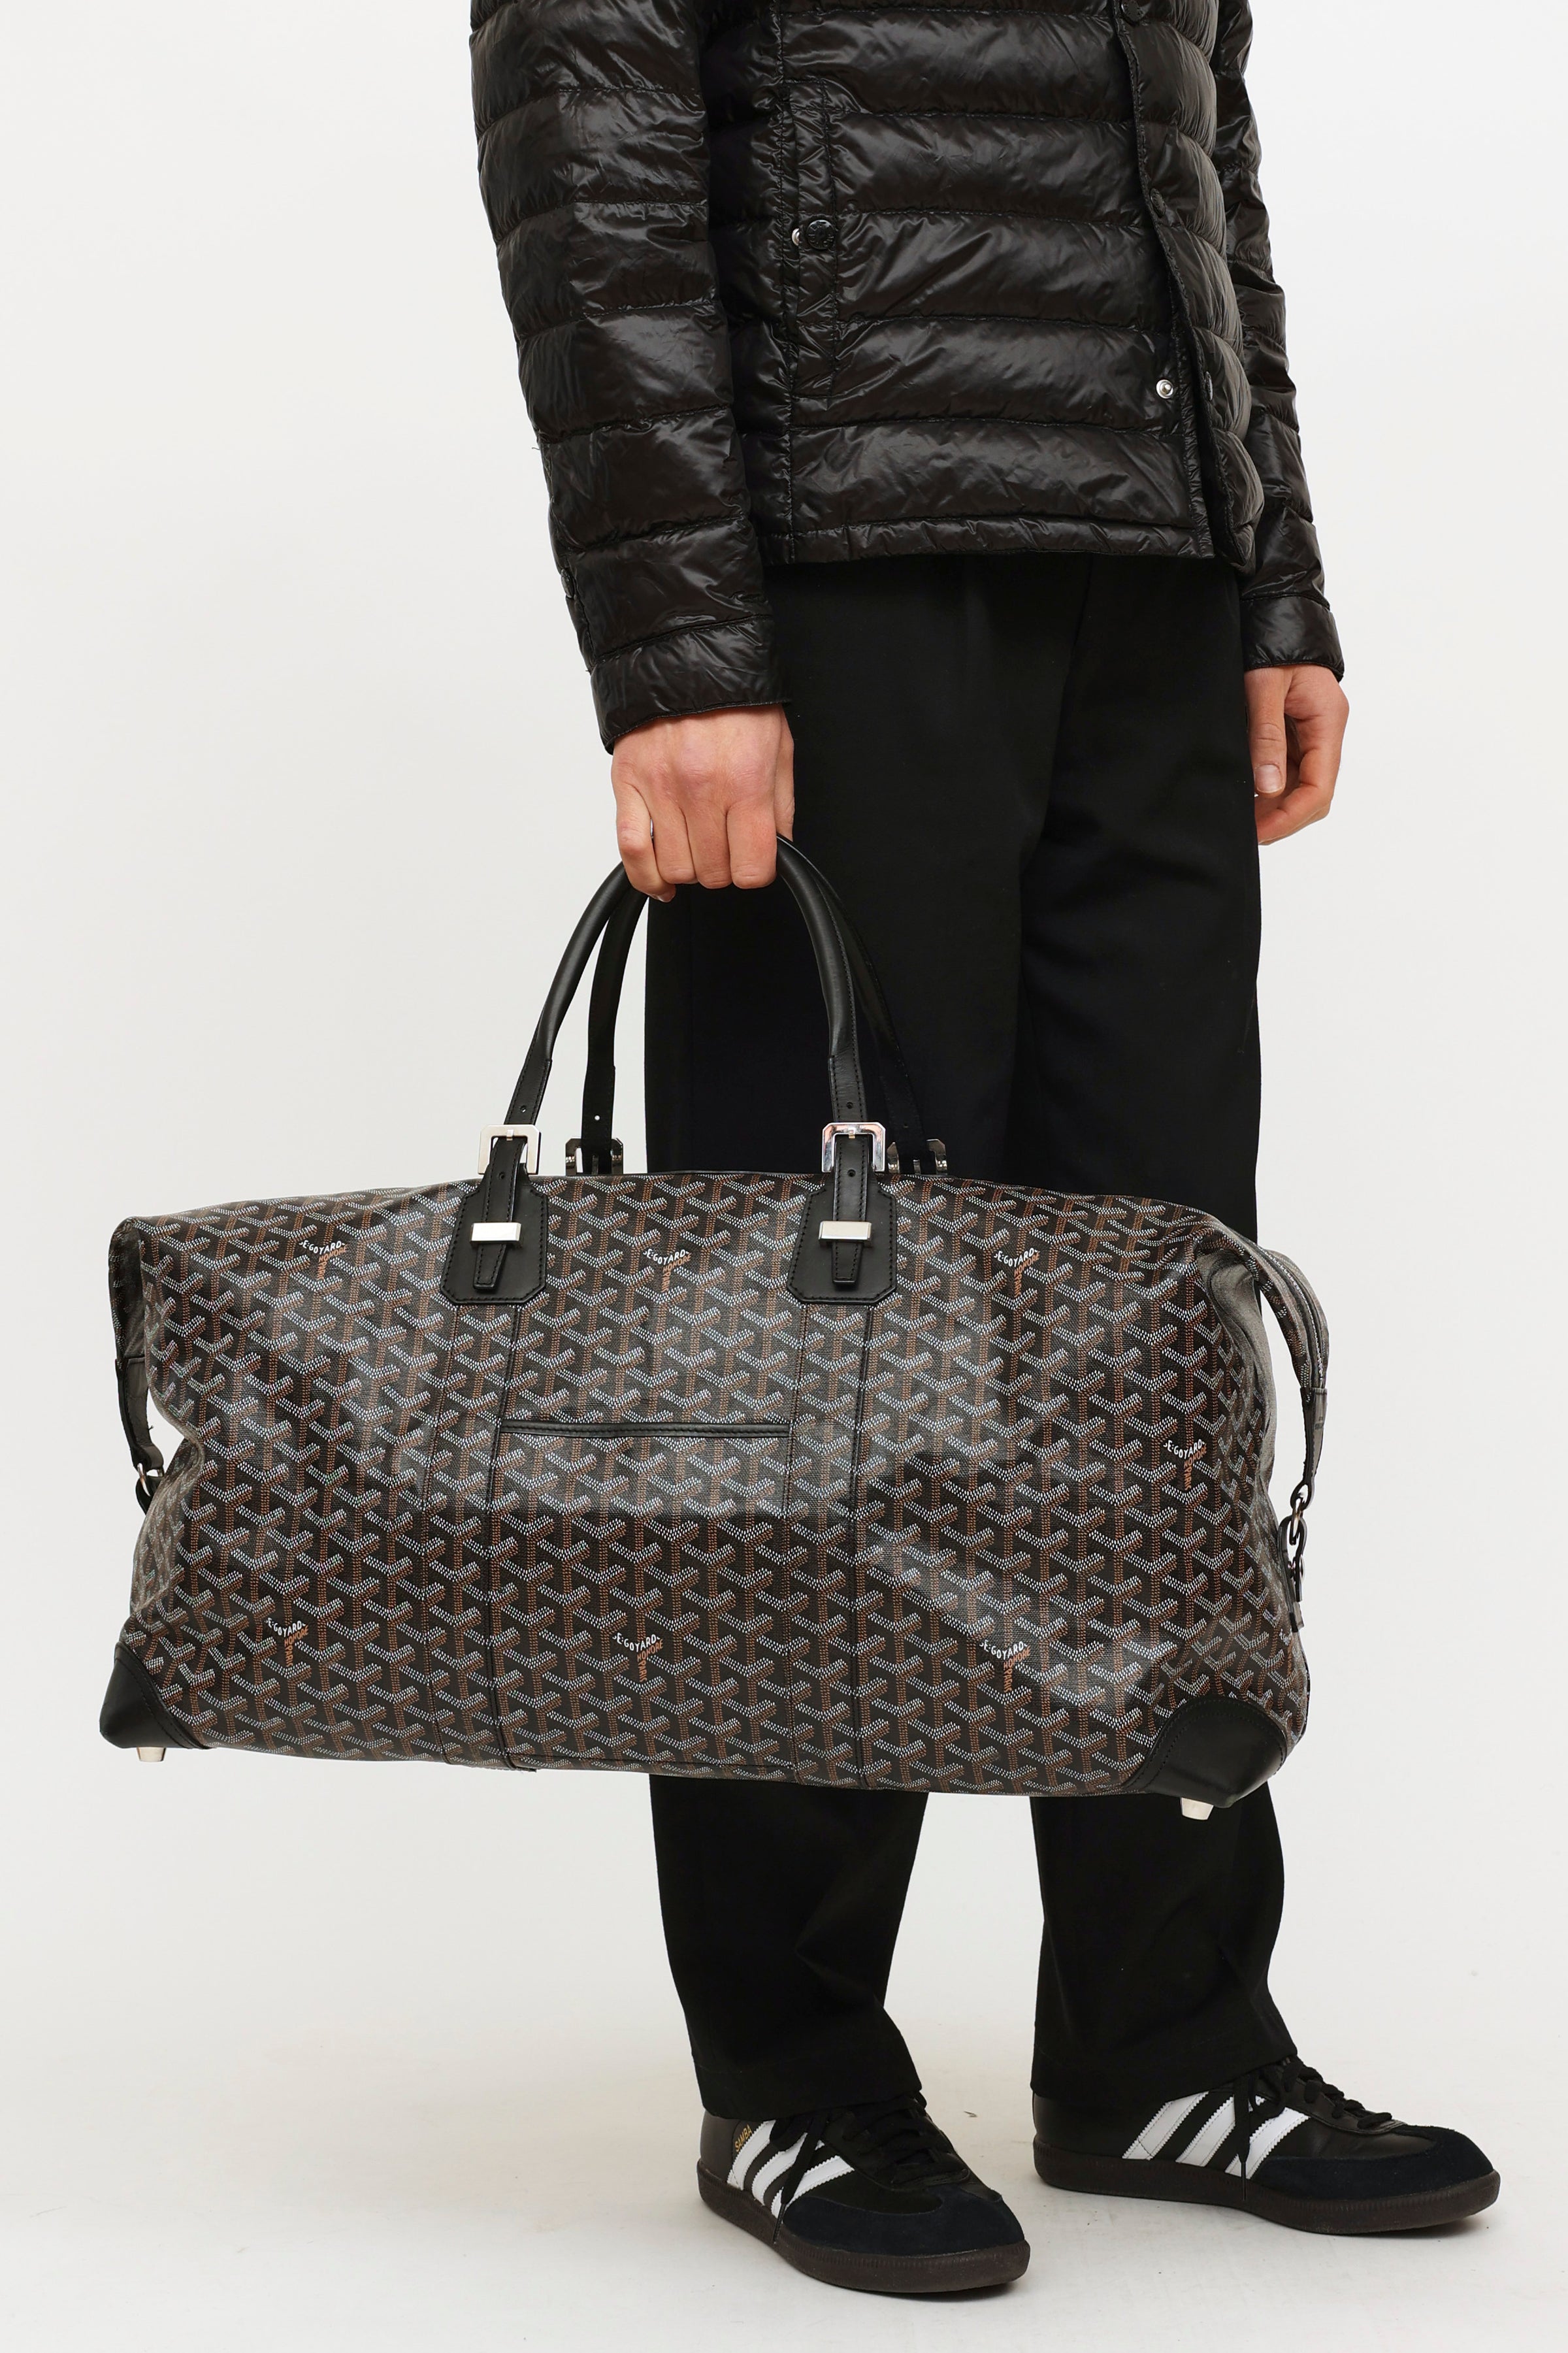 Goyard Monogram Duffle Bag in Black